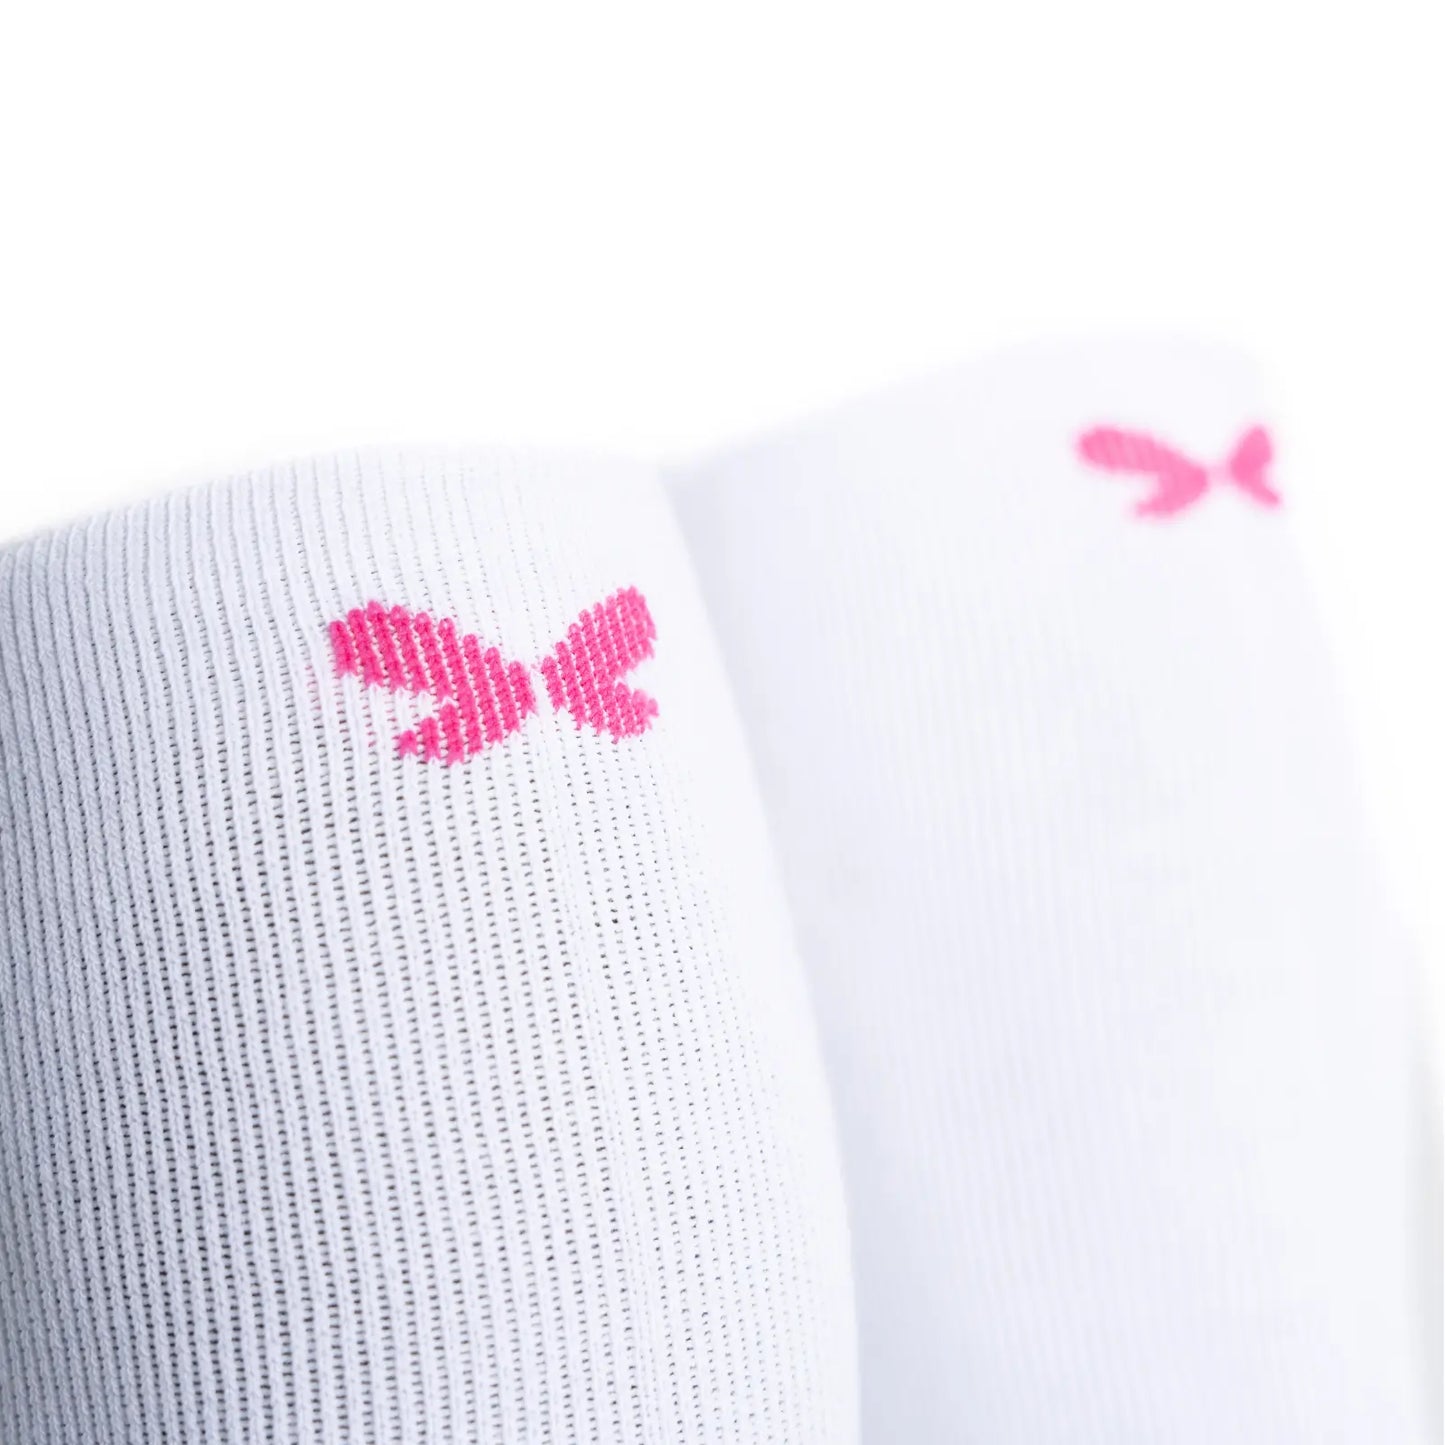 Detalle de calcetines con compresión de algodón, altos, color blanco con puntera y talón color rosa fucsia